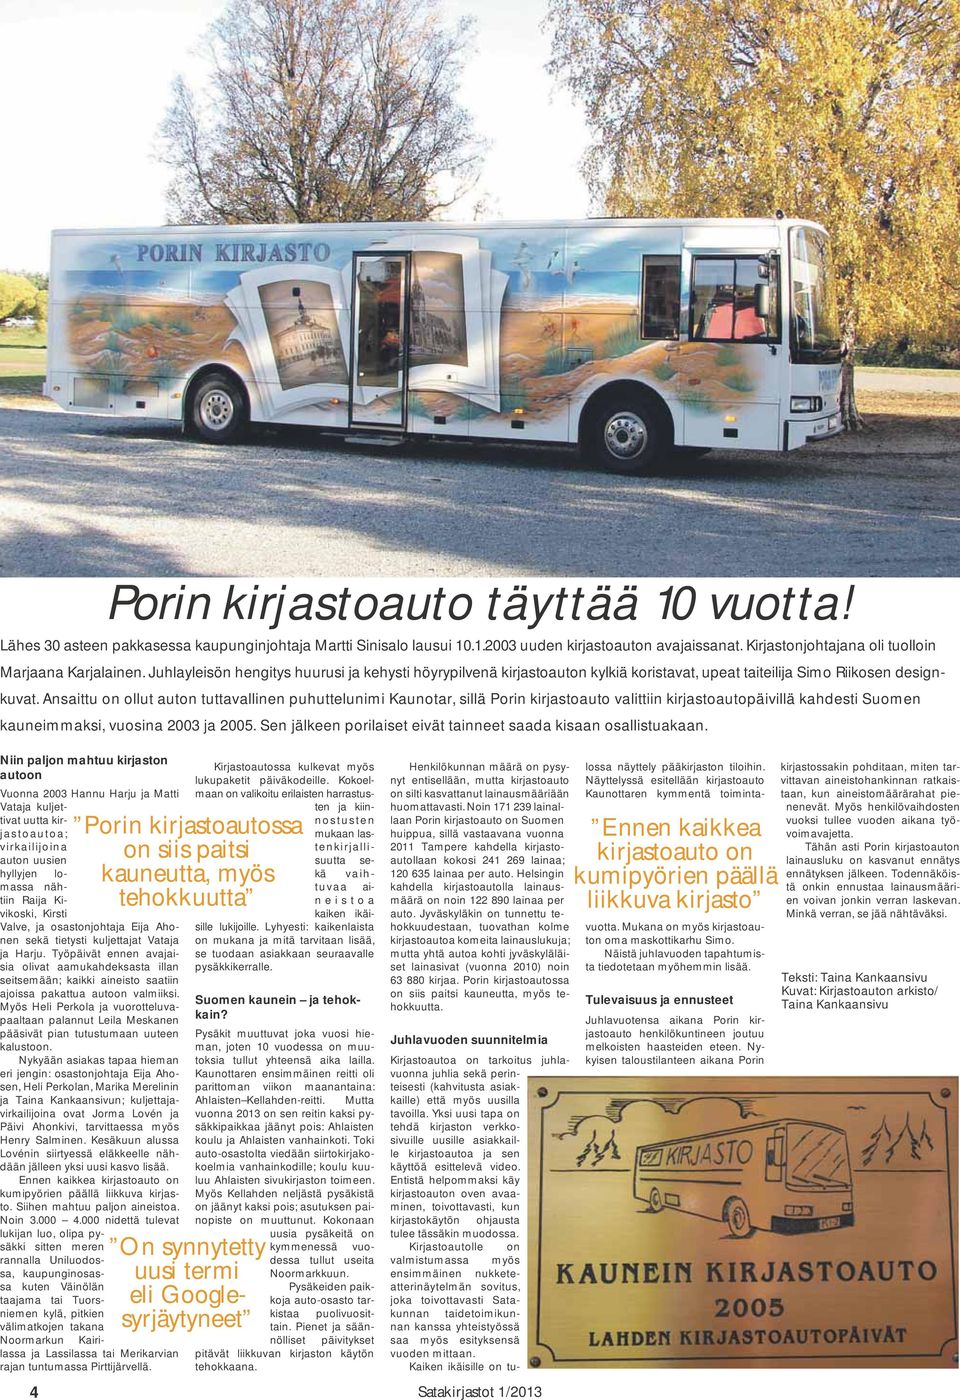 Ansaittu on ollut auton tuttavallinen puhuttelunimi Kaunotar, sillä Porin kirjastoauto valittiin kirjastoautopäivillä kahdesti Suomen kauneimmaksi, vuosina 2003 ja 2005.